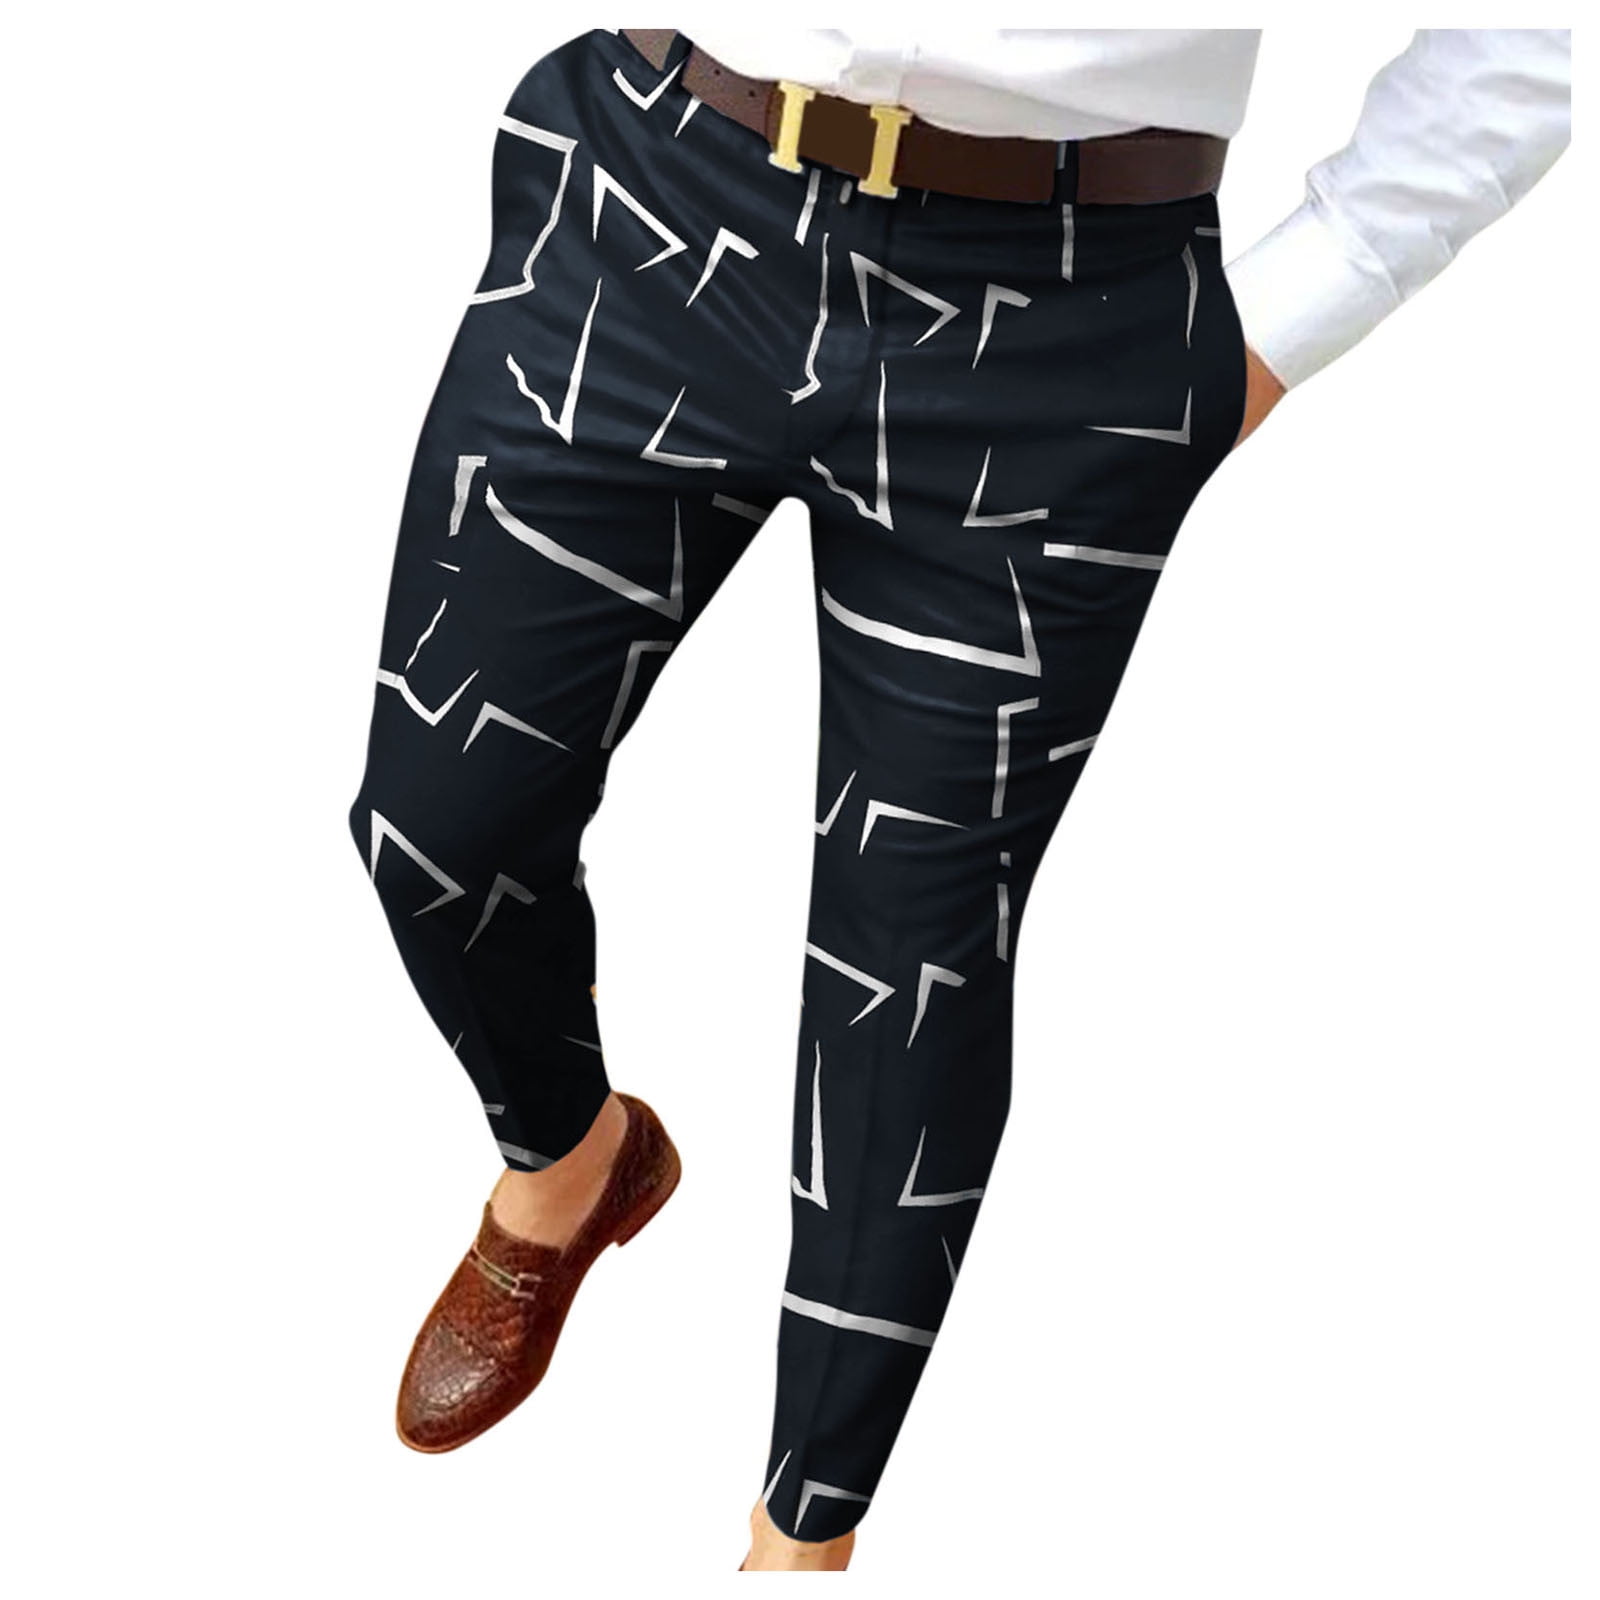 VSSSJ Mens Suit Pants Plus Size Fashion Print Button Zipper Elastic ...